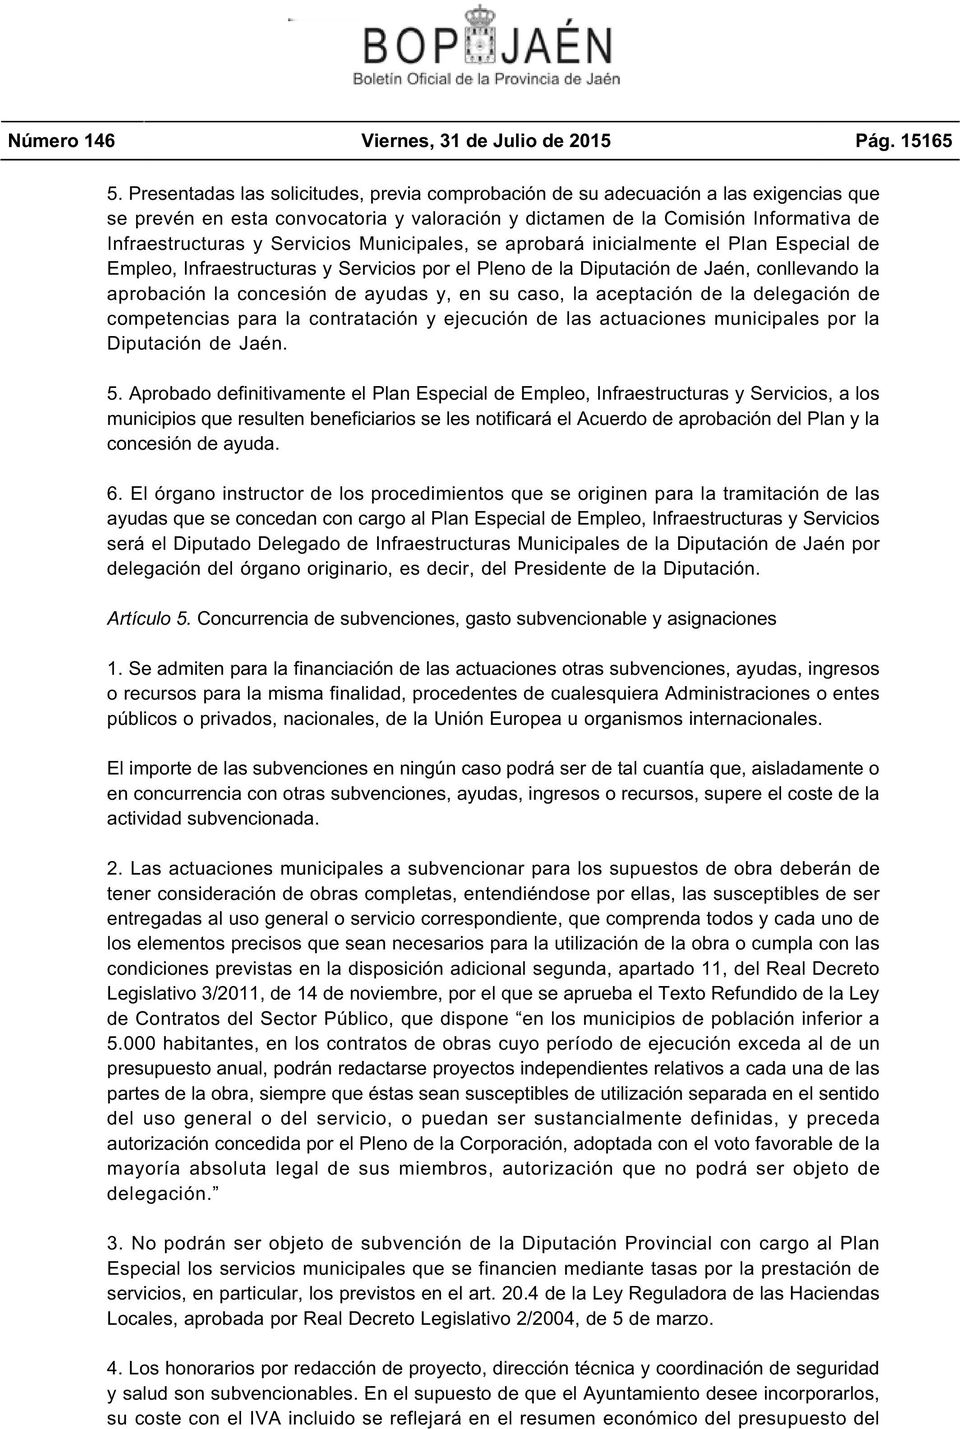 Servicios Municipales, se aprobará inicialmente el Plan Especial de Empleo, Infraestructuras y Servicios por el Pleno de la Diputación de Jaén, conllevando la aprobación la concesión de ayudas y, en